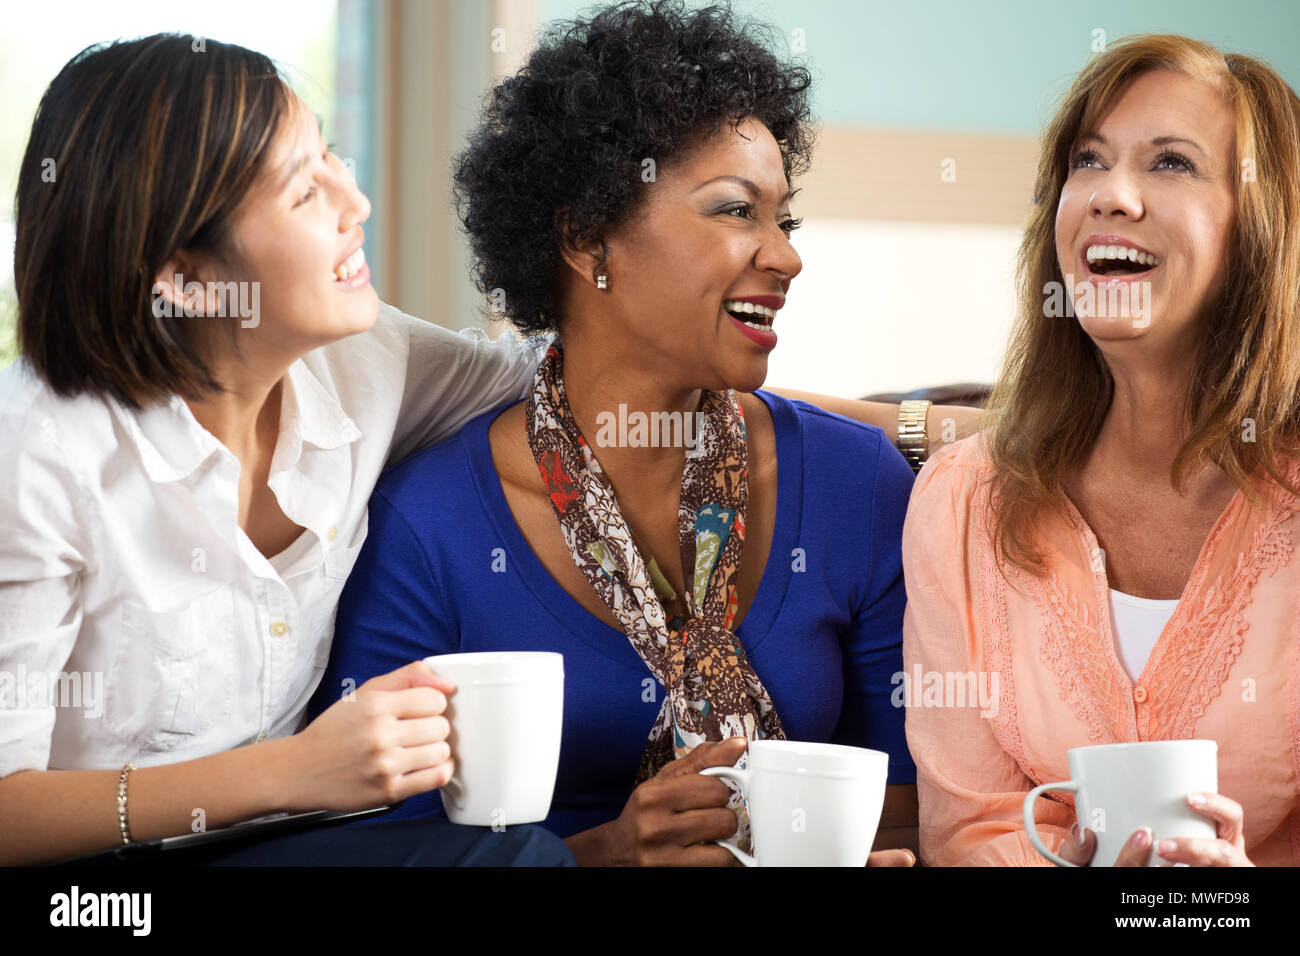 Diversos grupos de amigos hablando y riéndose. Foto de stock